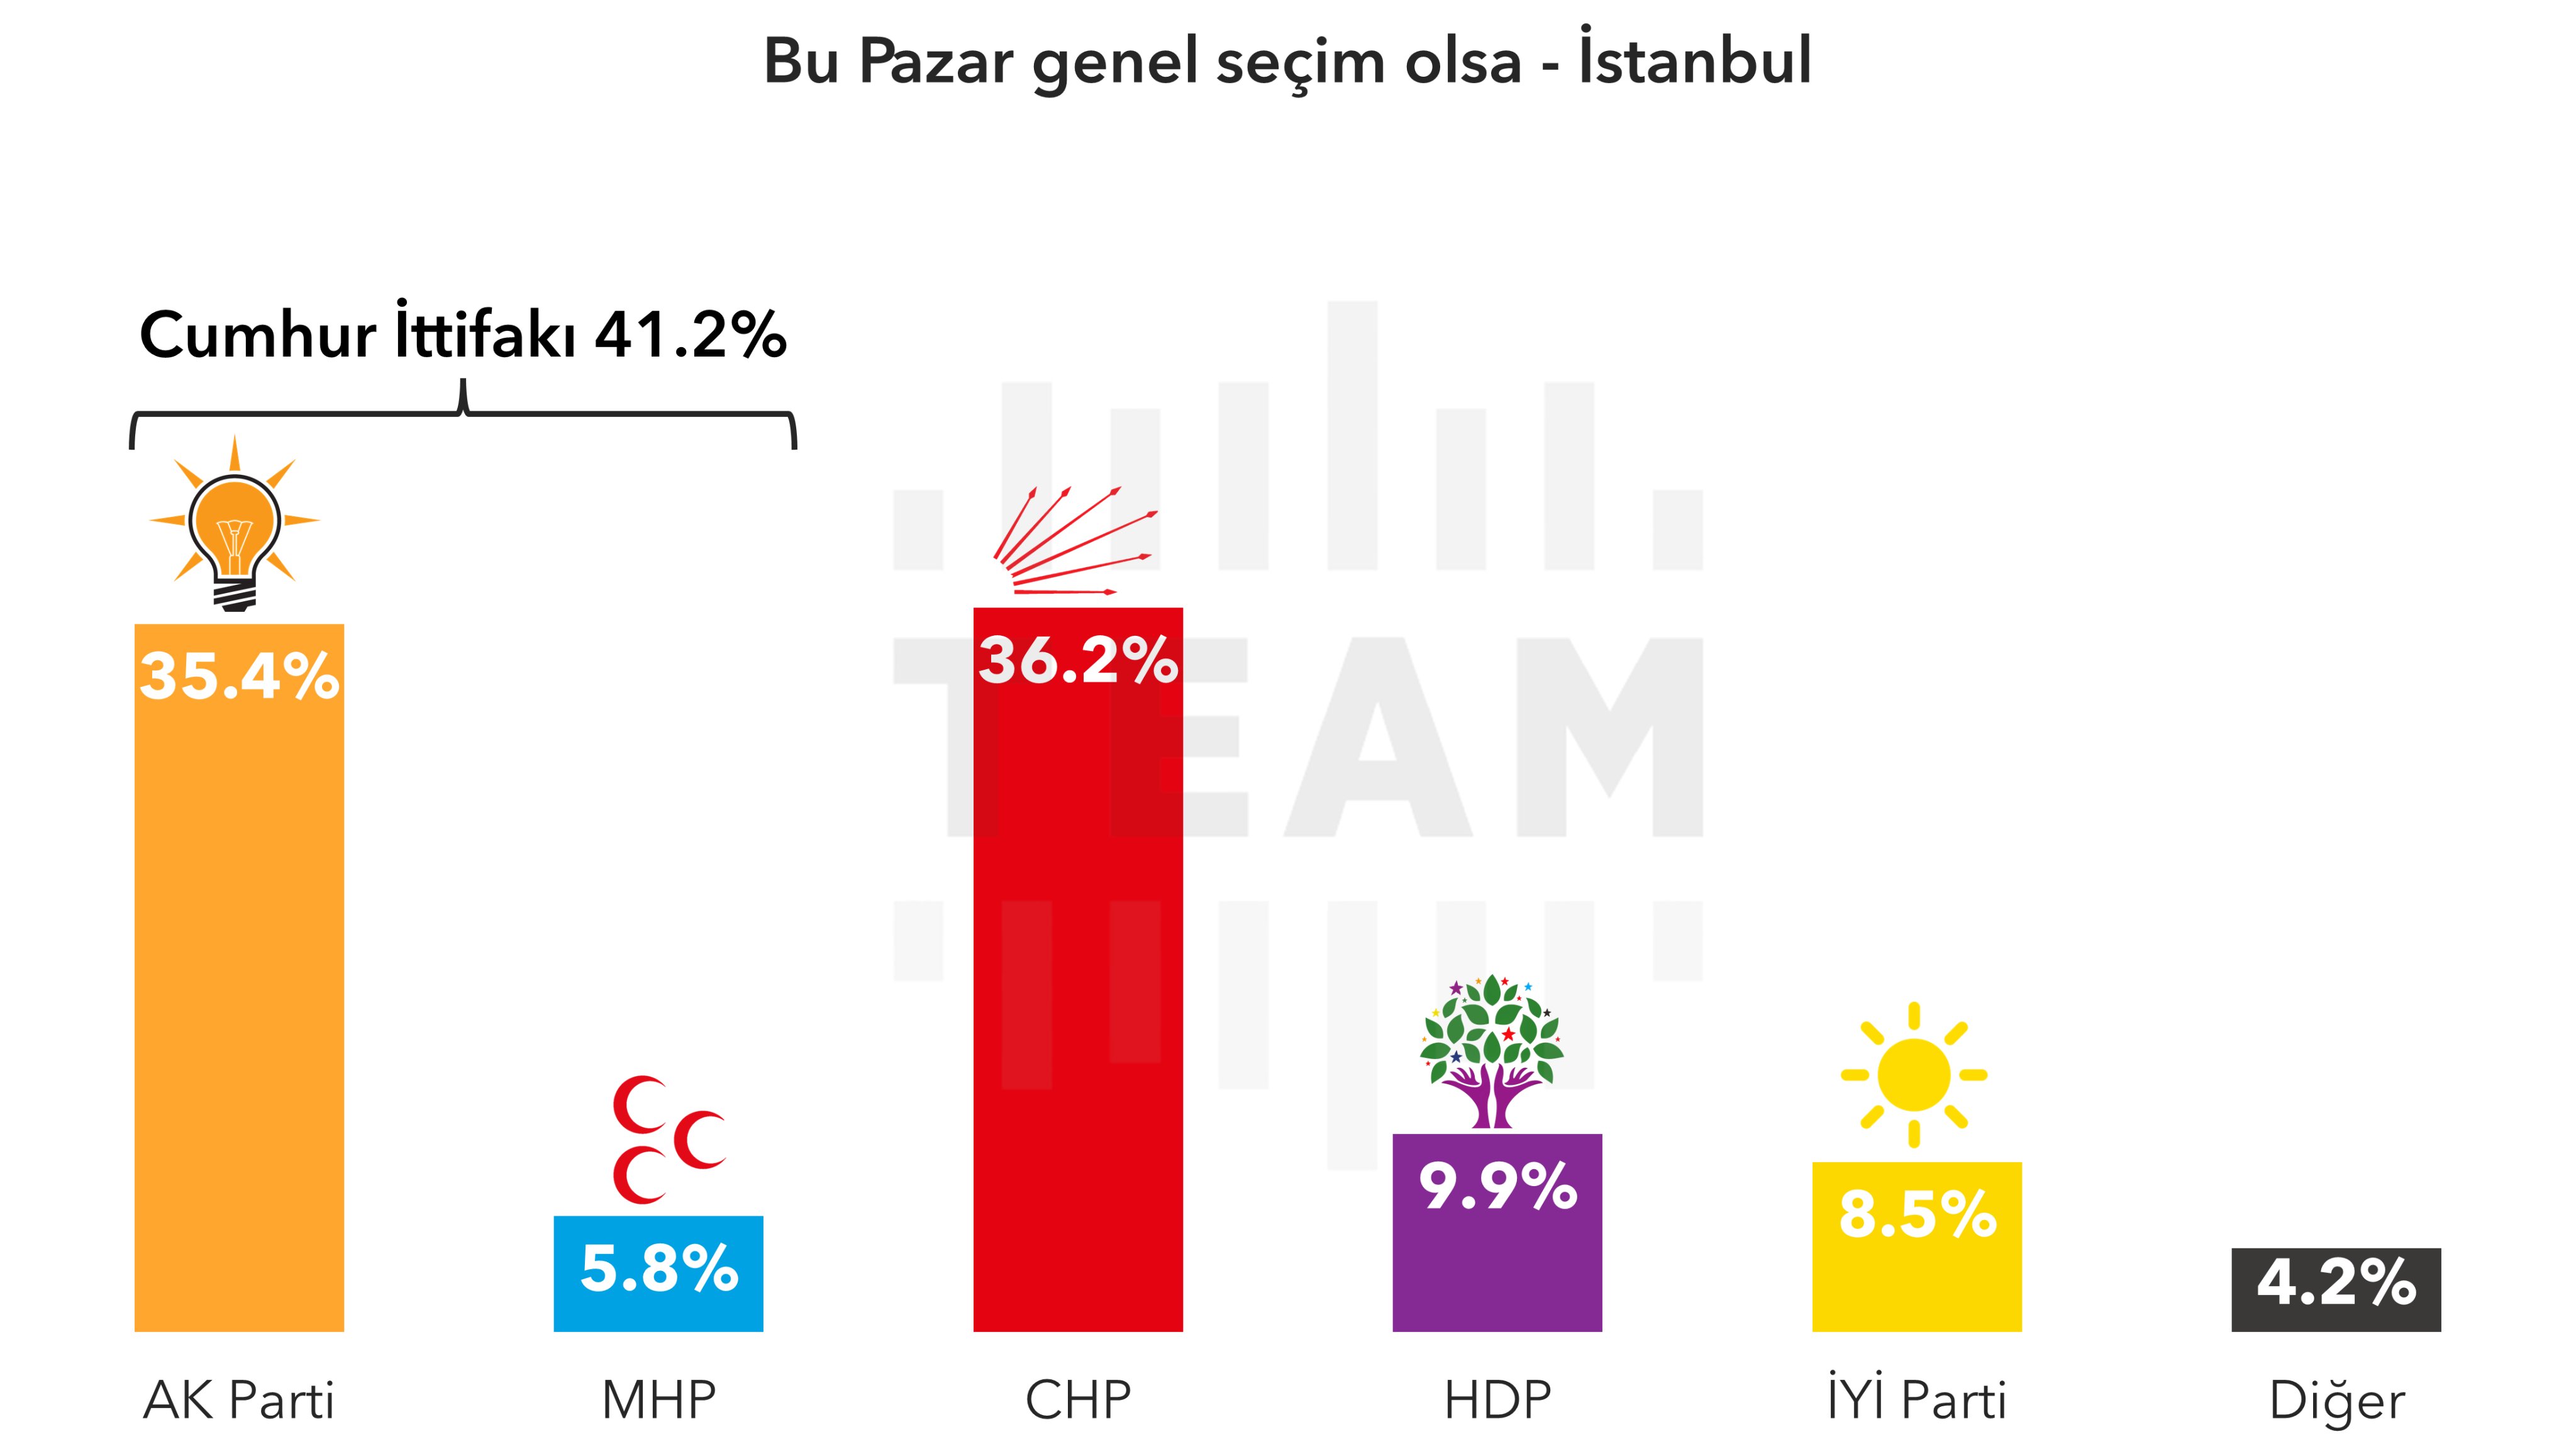 İstanbul’da, 2018’de %50.7 olan Cumhur İttifakı oyları Ocak ayı itibari ile %41.2’ye gerilemiş durumda.